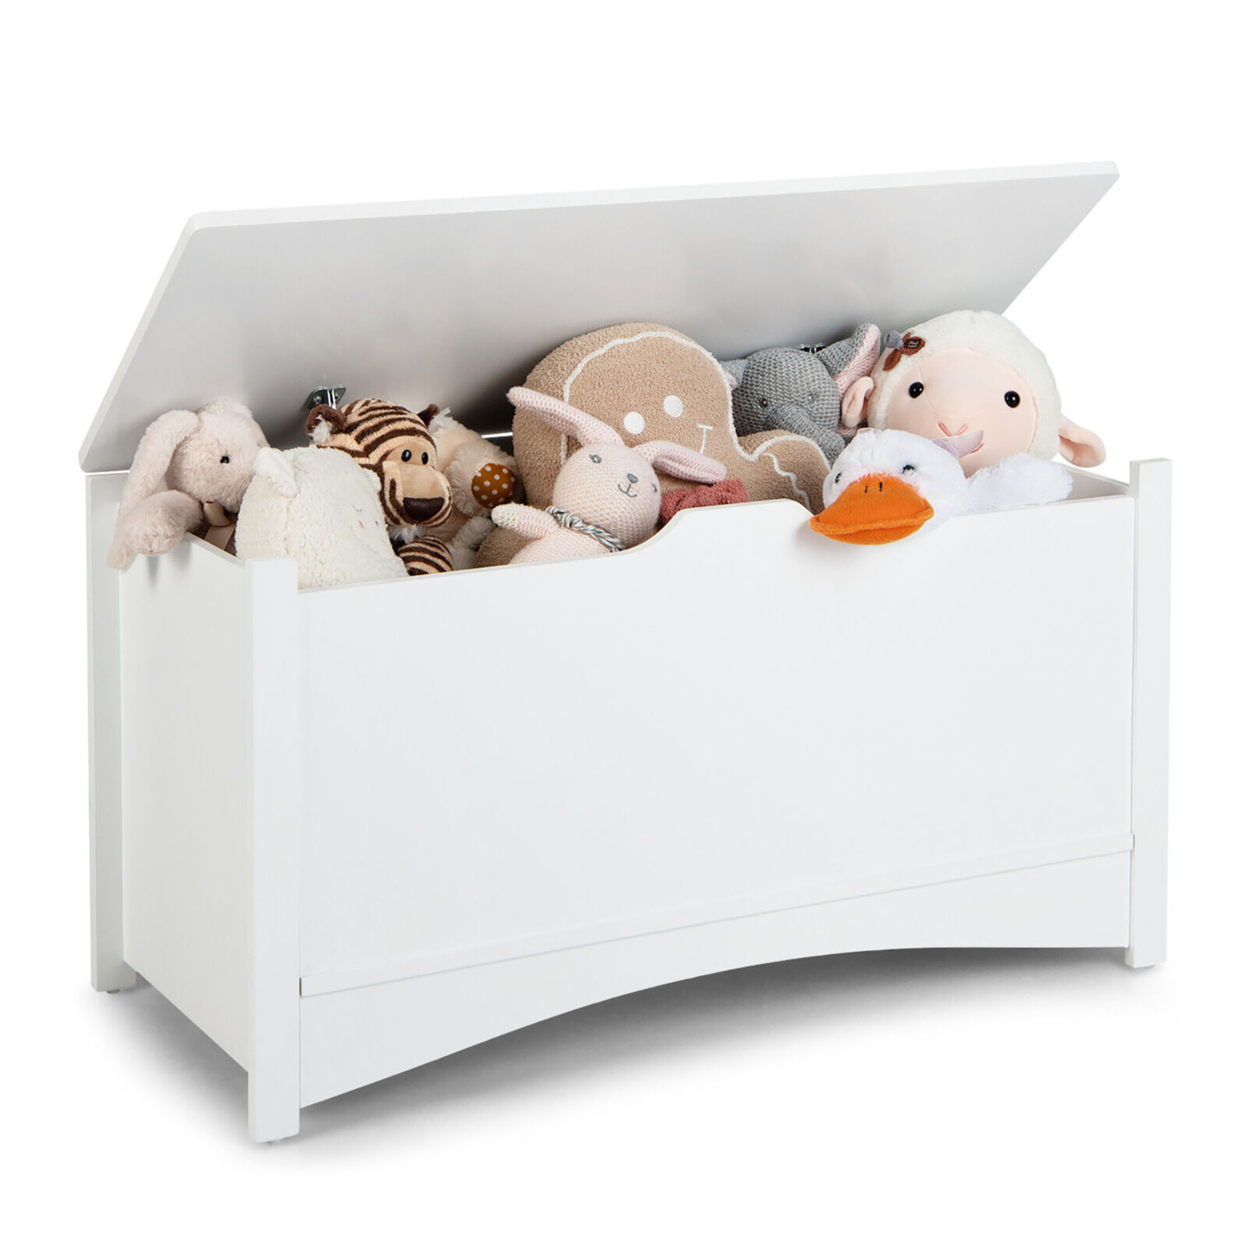 Kids Toy Box Large Wooden Flip-Top Storage Chest Organizer Bench W/ Safety Hinge